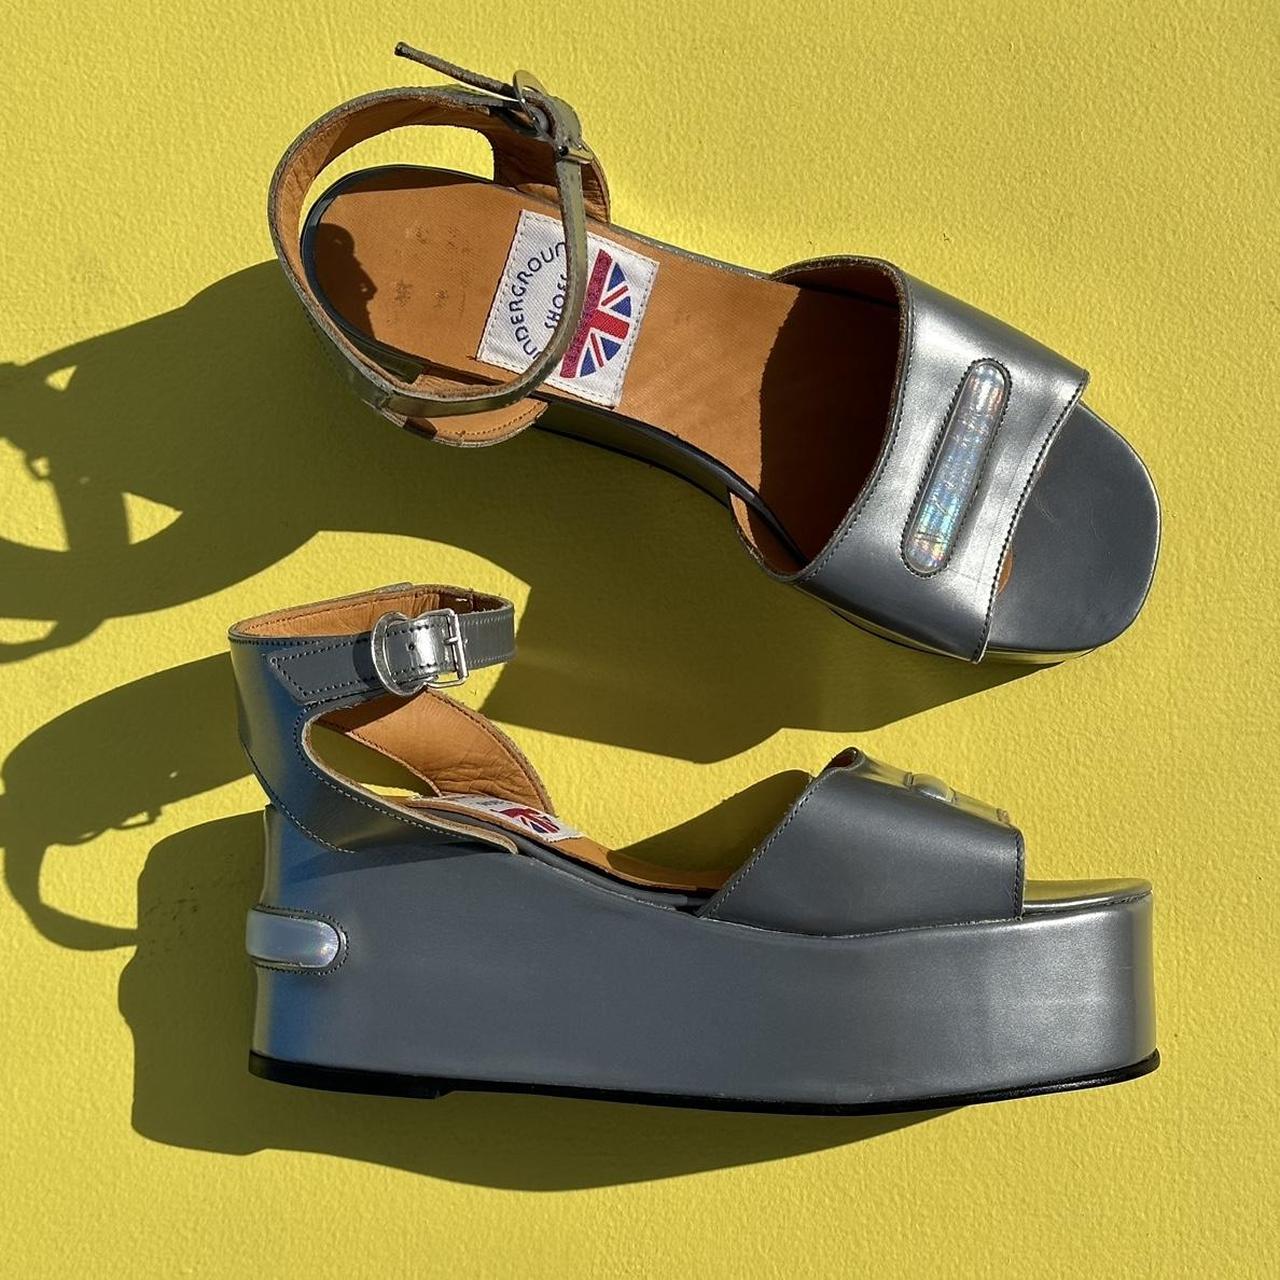 Rare vintage platform sandals made in England by... - Depop